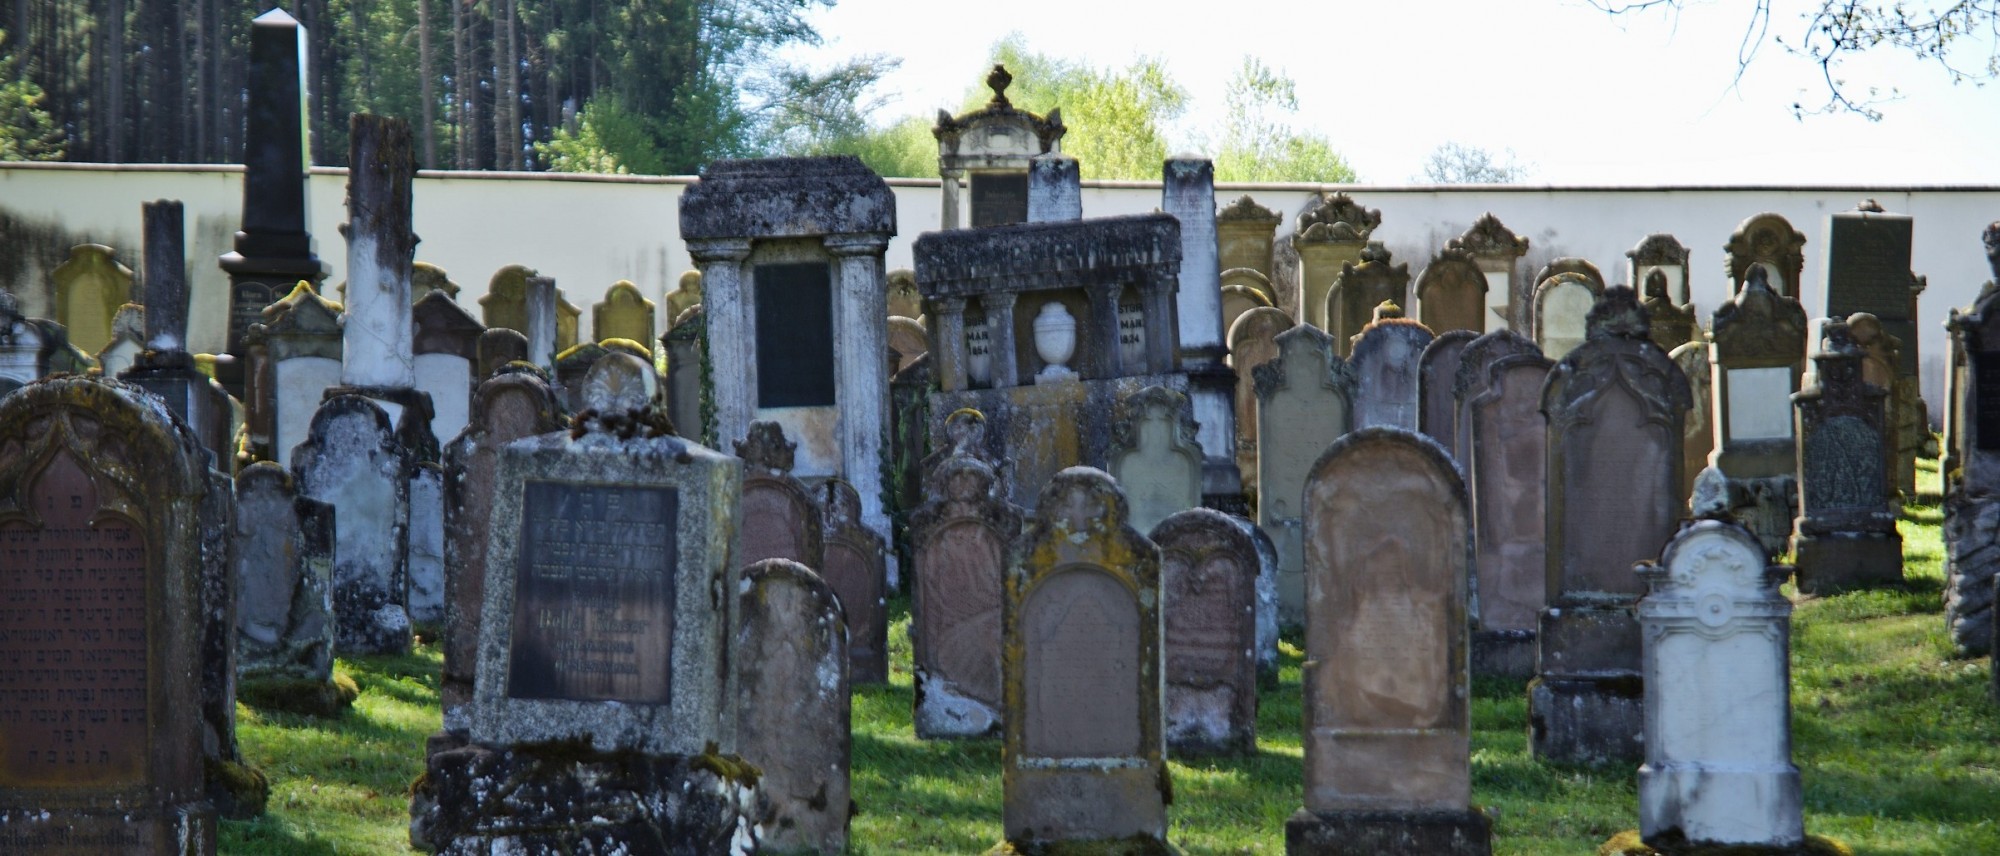 Grabsteine mit hebräischen Inschriften auf dem Friedhof in Krumbach. Führt zur Unterseite &quot;Krumbach&quot;.